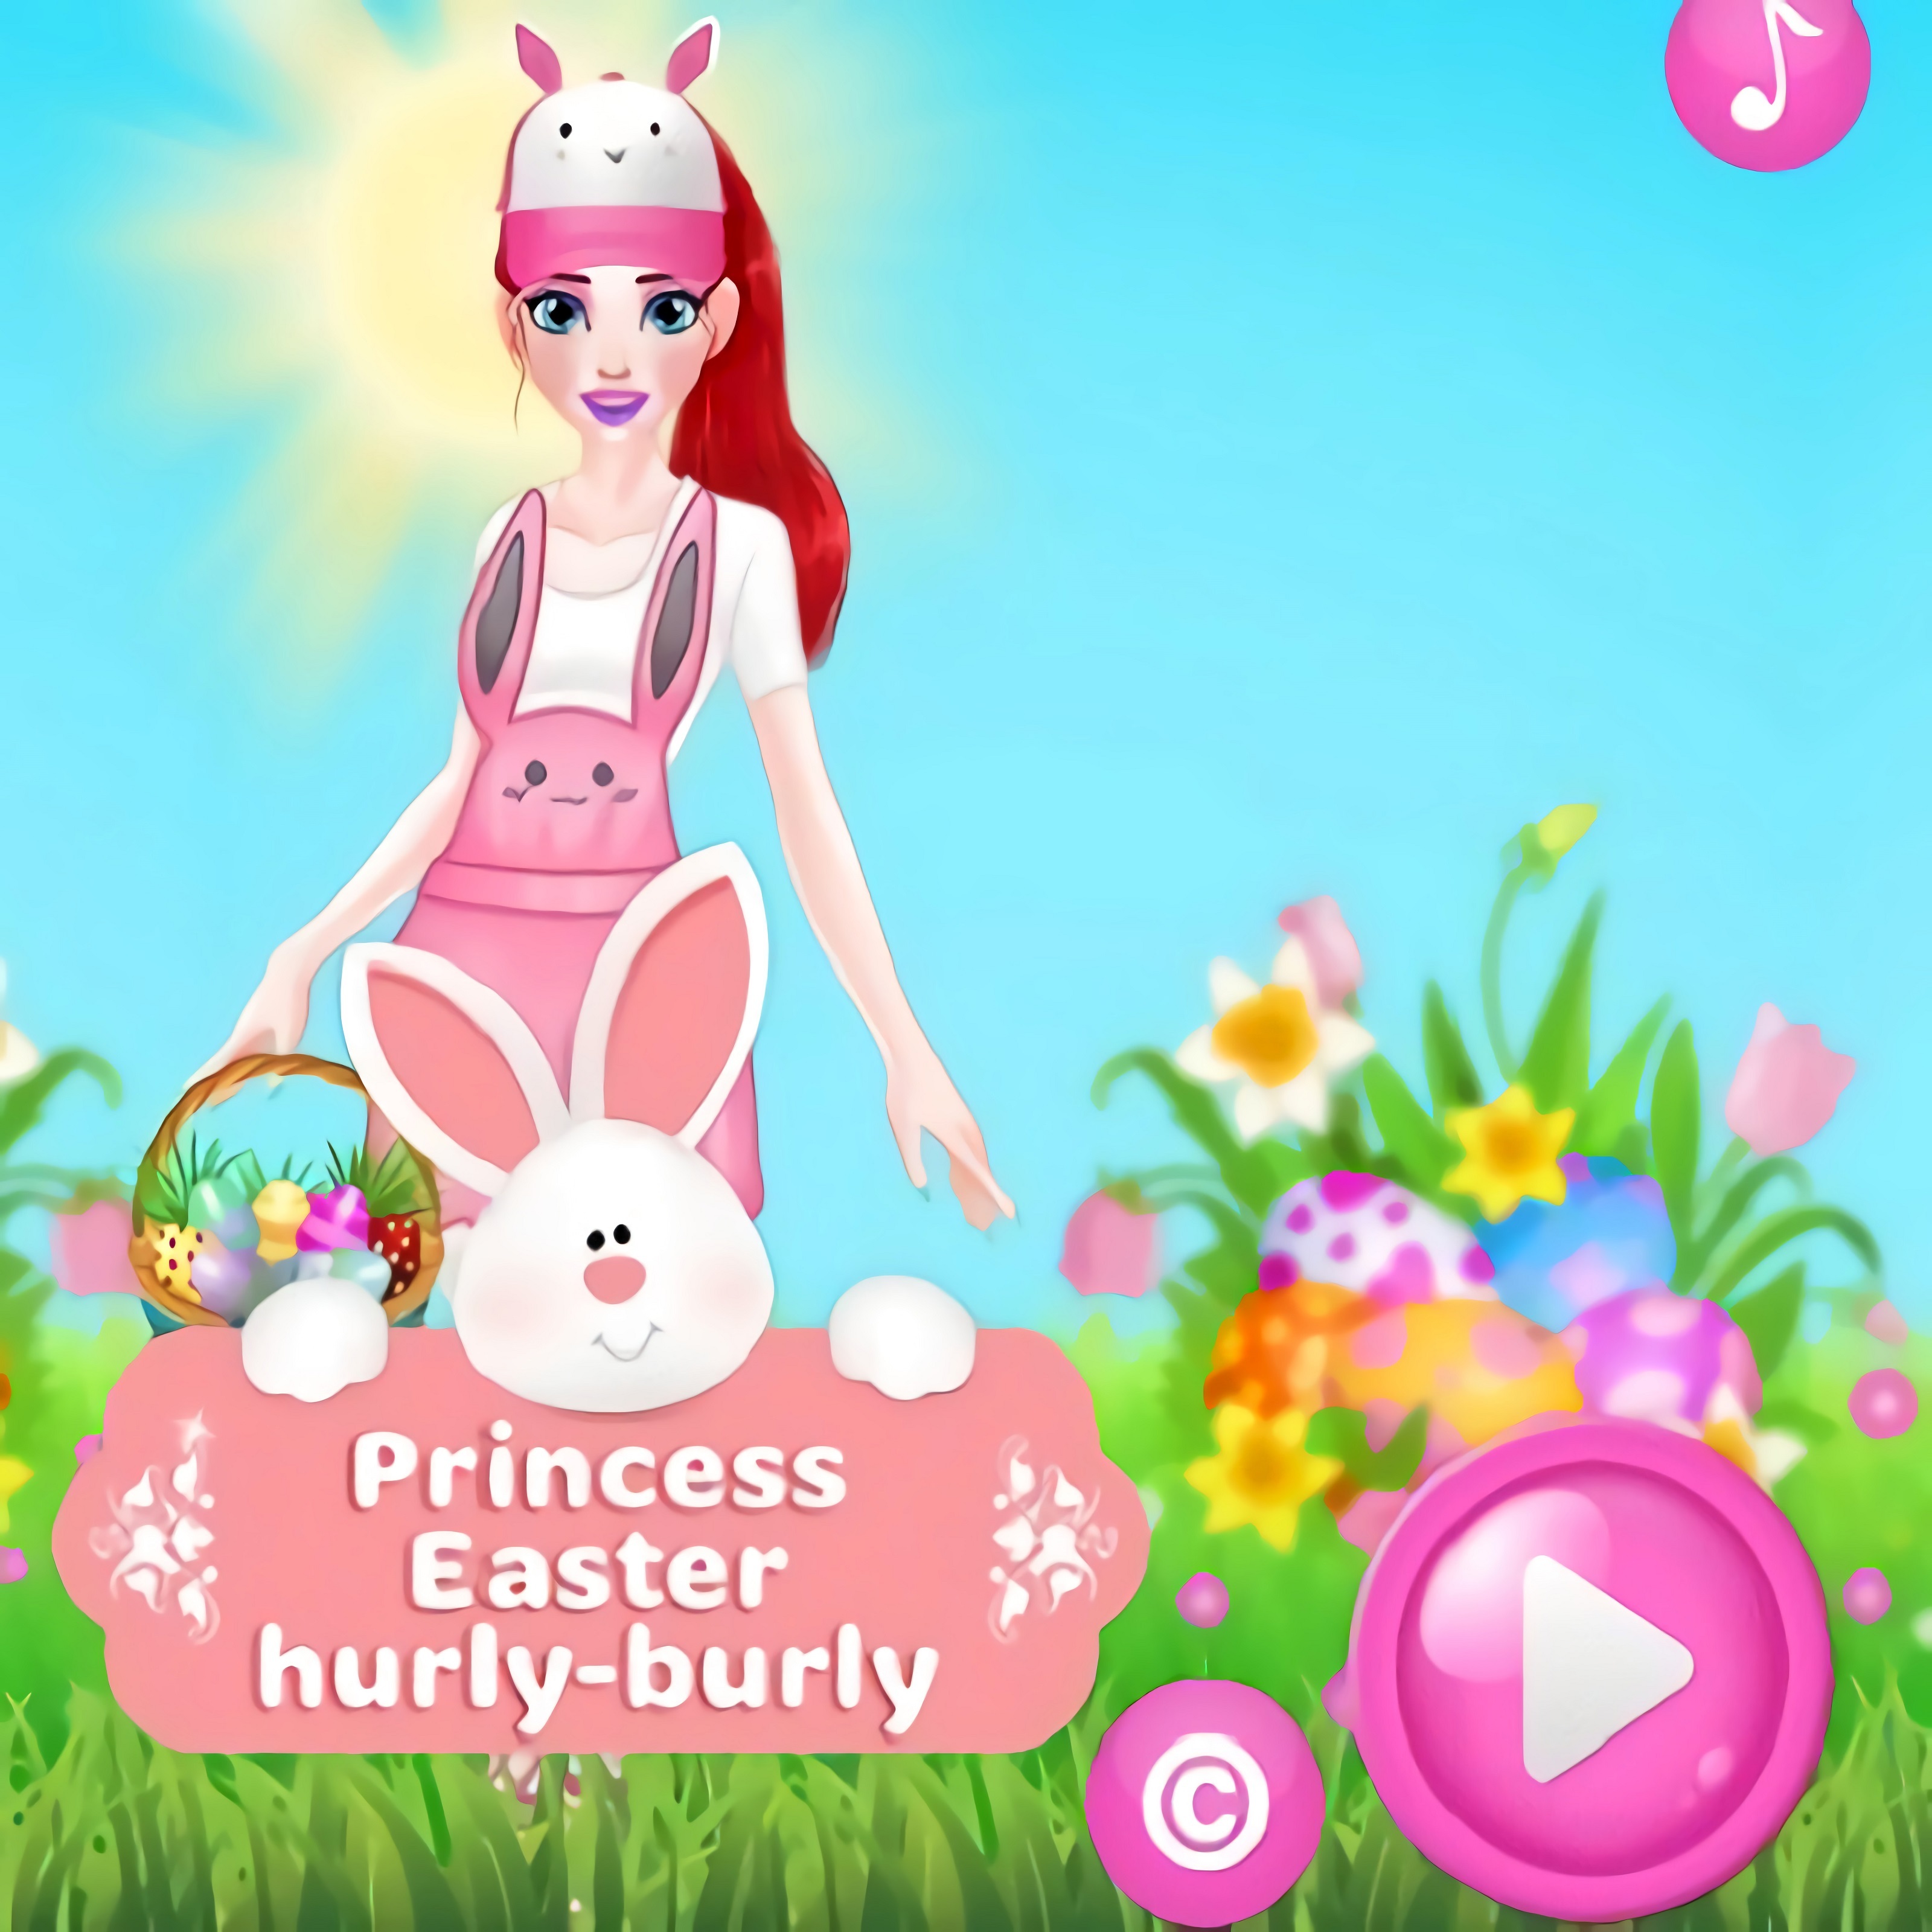 Princess Easter Hurly-Burly